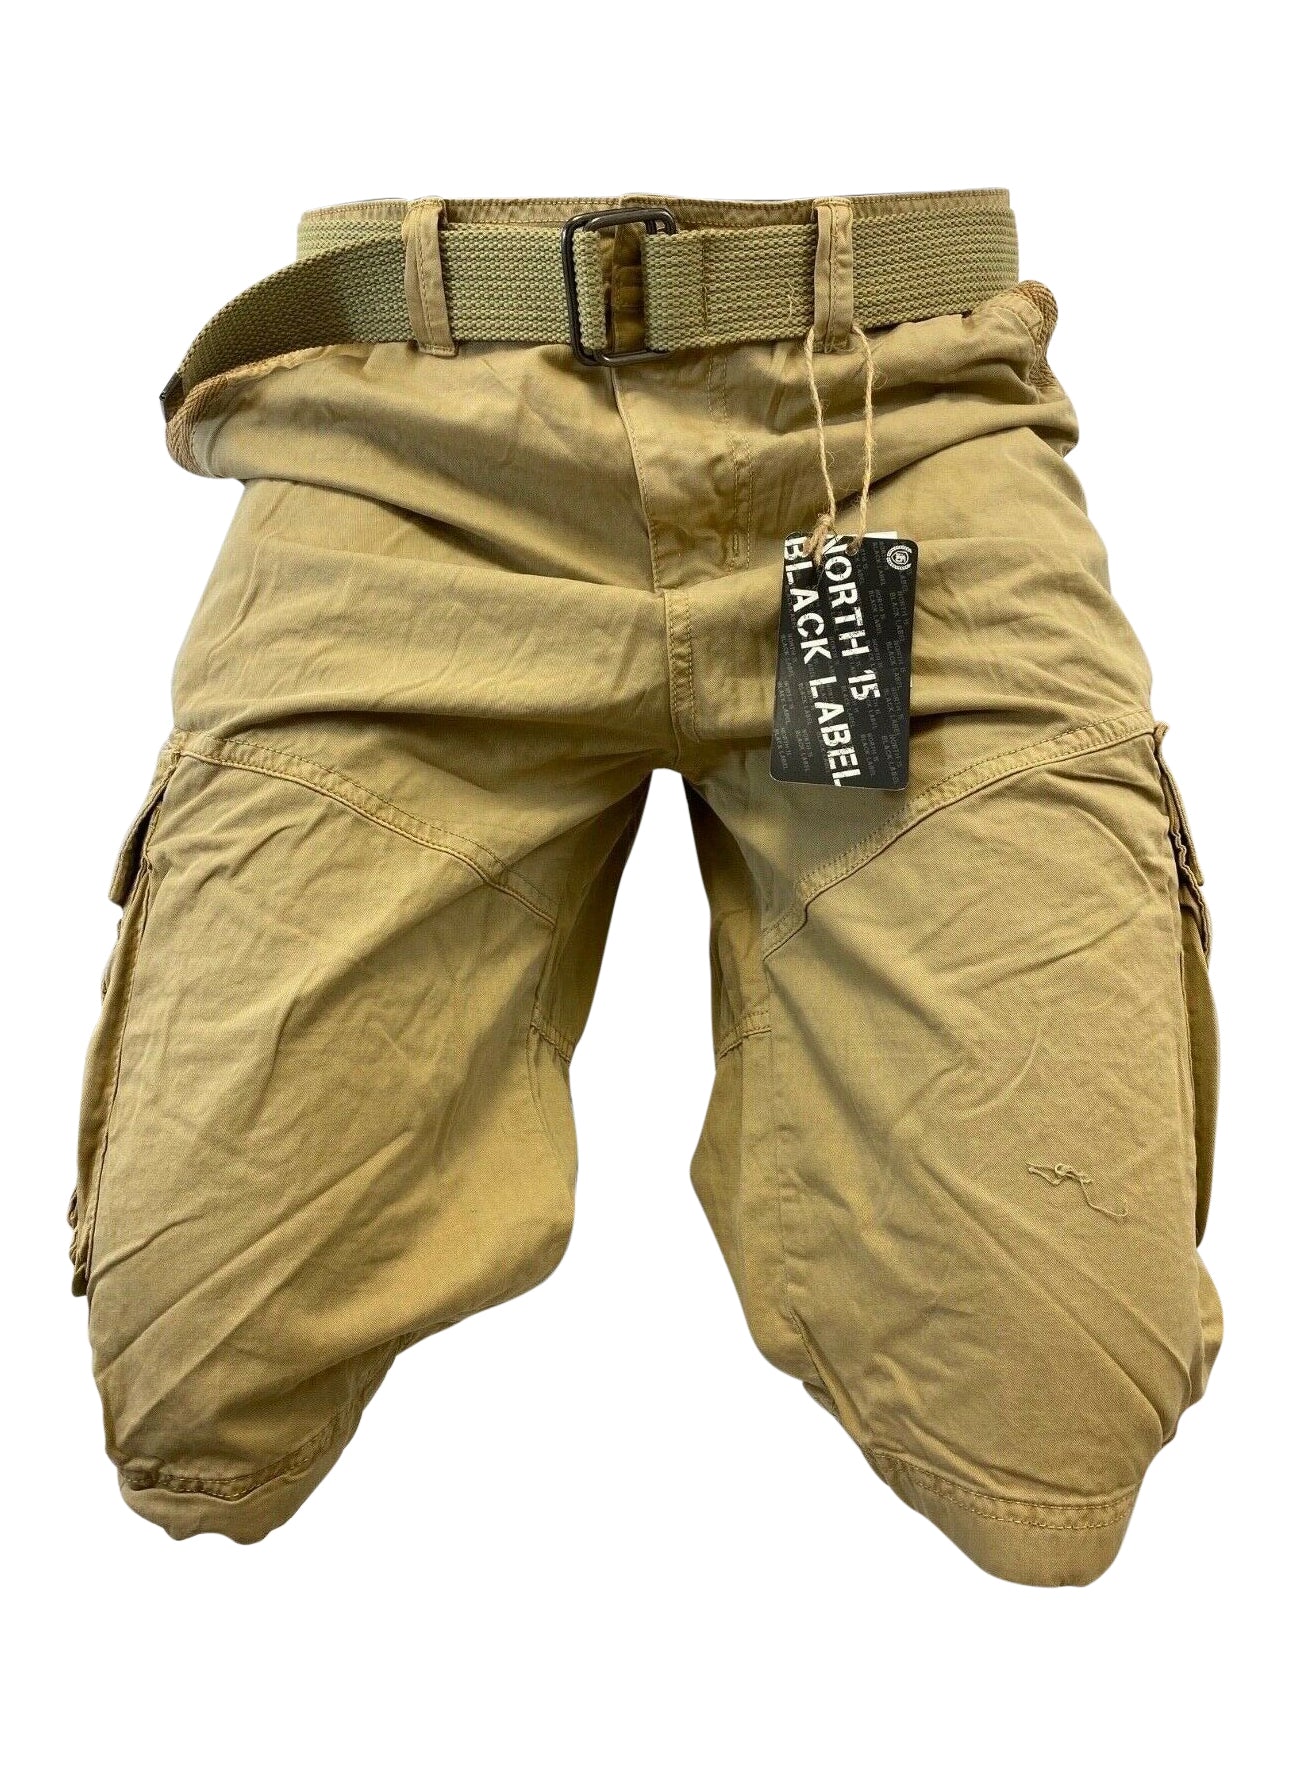 Mens Khaki Cargo Shorts with Adjustable Belt